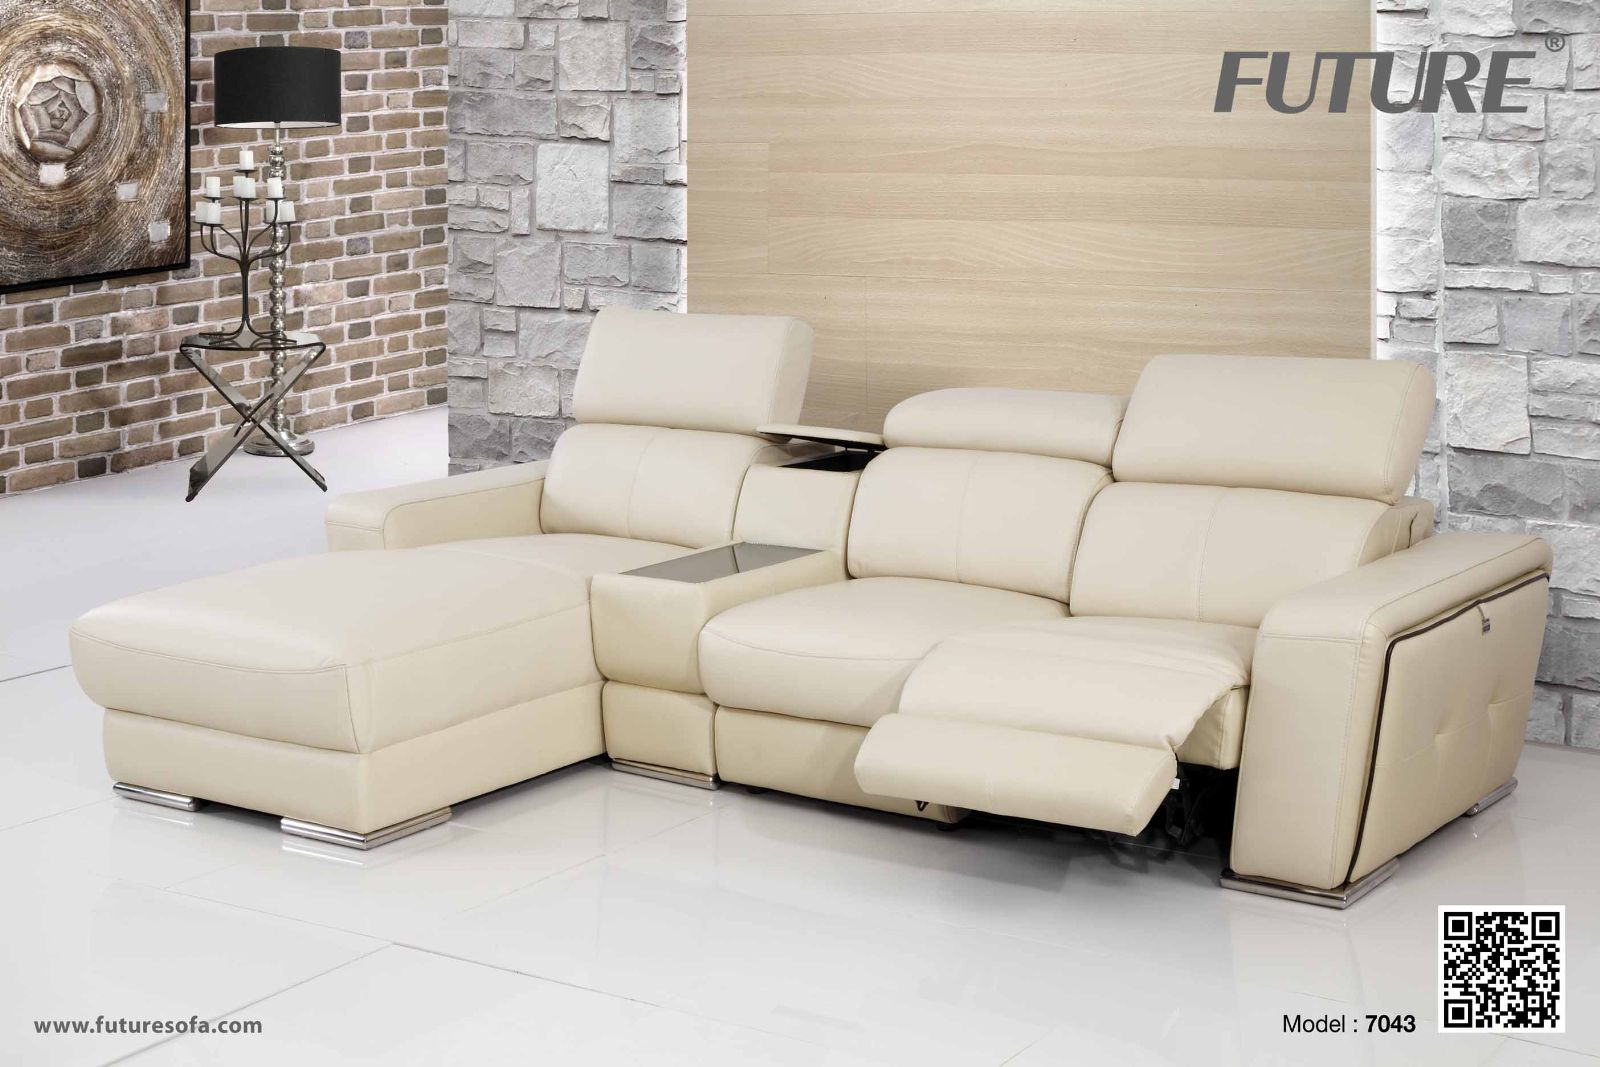 Sofa da Future Model 7043 từ SOFACHINHHANG.COM